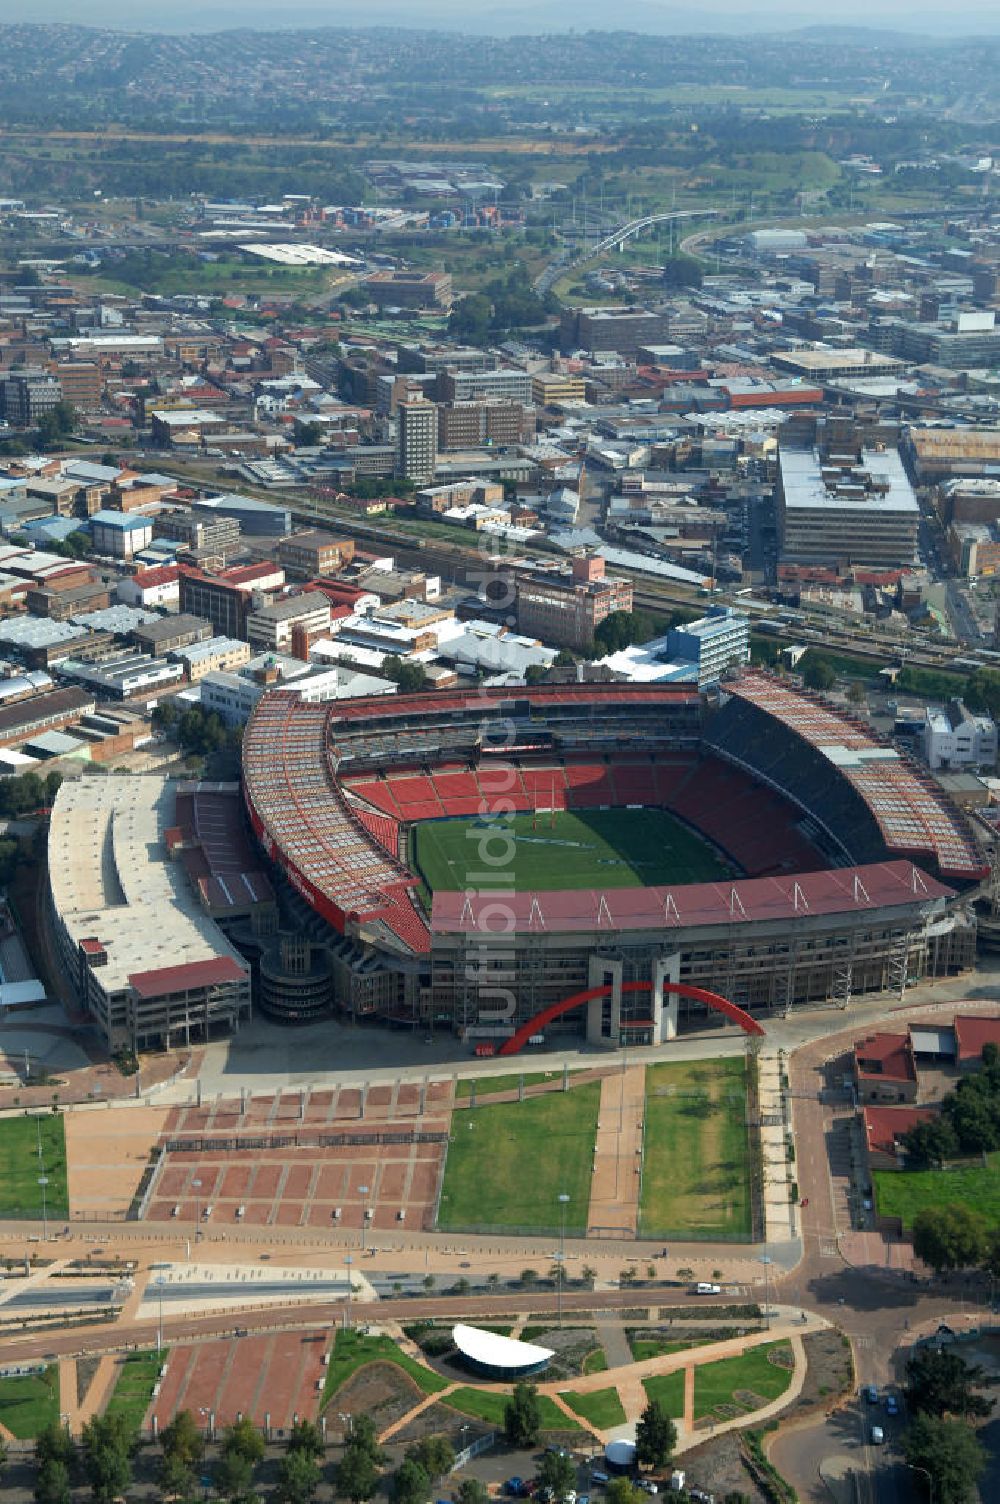 Johannesburg aus der Vogelperspektive: Coca-Cola Park Stadion / Stadium Johannesburg Südafrika / South Africa